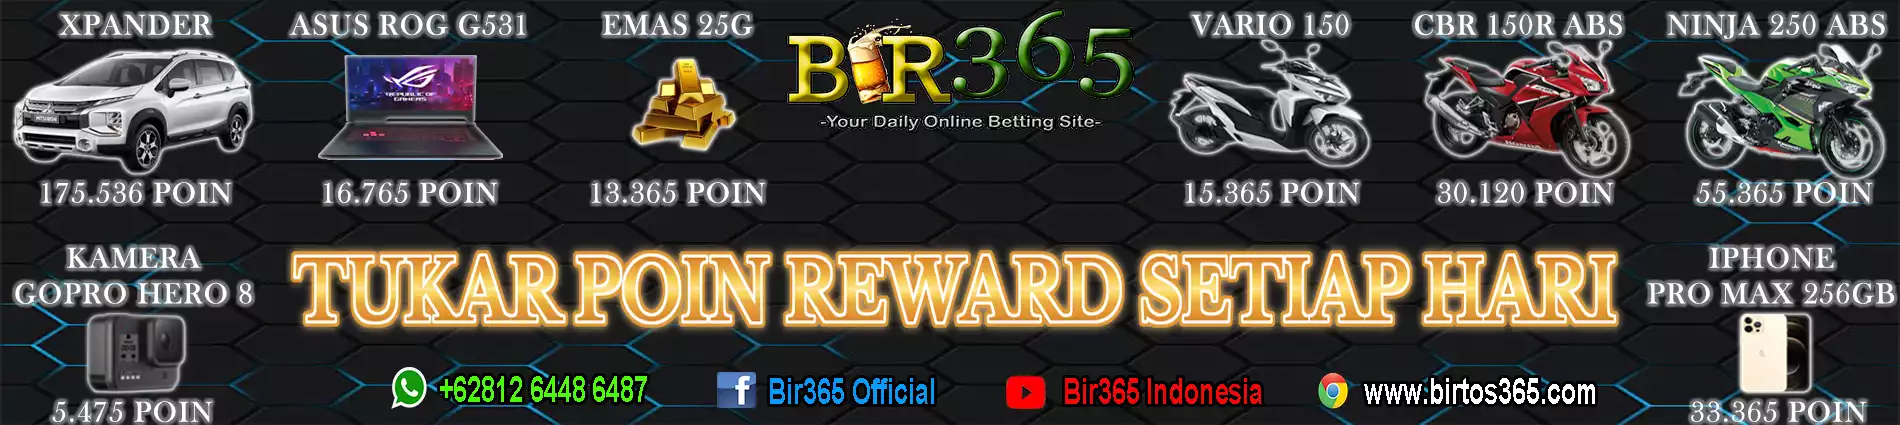 POIN REWARD BIR365 